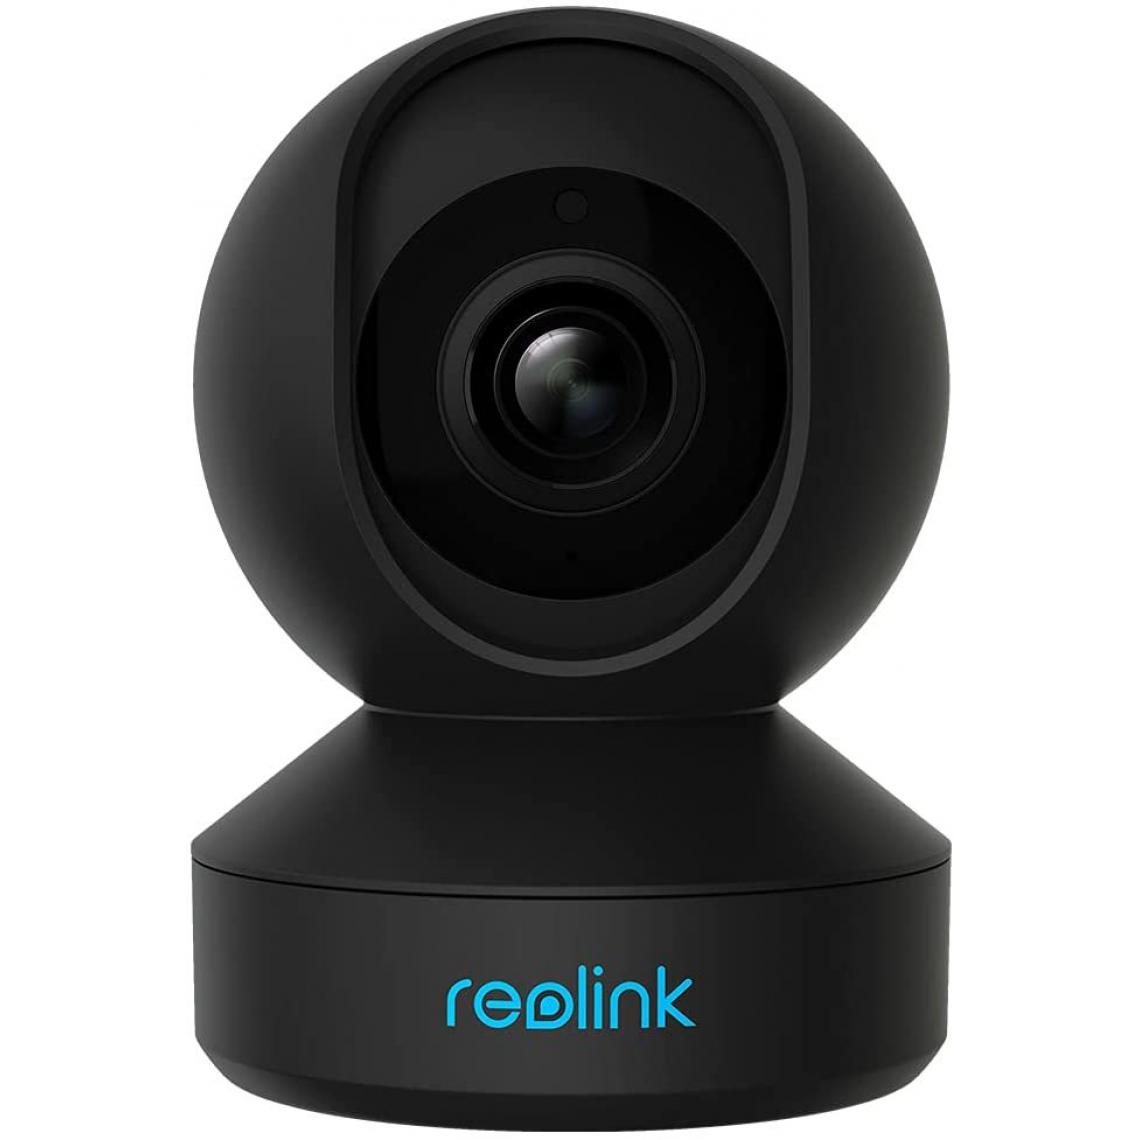 Reolink - Caméra Sécurité Intérieure WiFi 4MP, Caméra IP Pan&Tilt pour maison Audio bidirectionnel IR Vision Nocturne, avec Fente pour Carte SD, E1 Pro Noire - Caméra de surveillance connectée